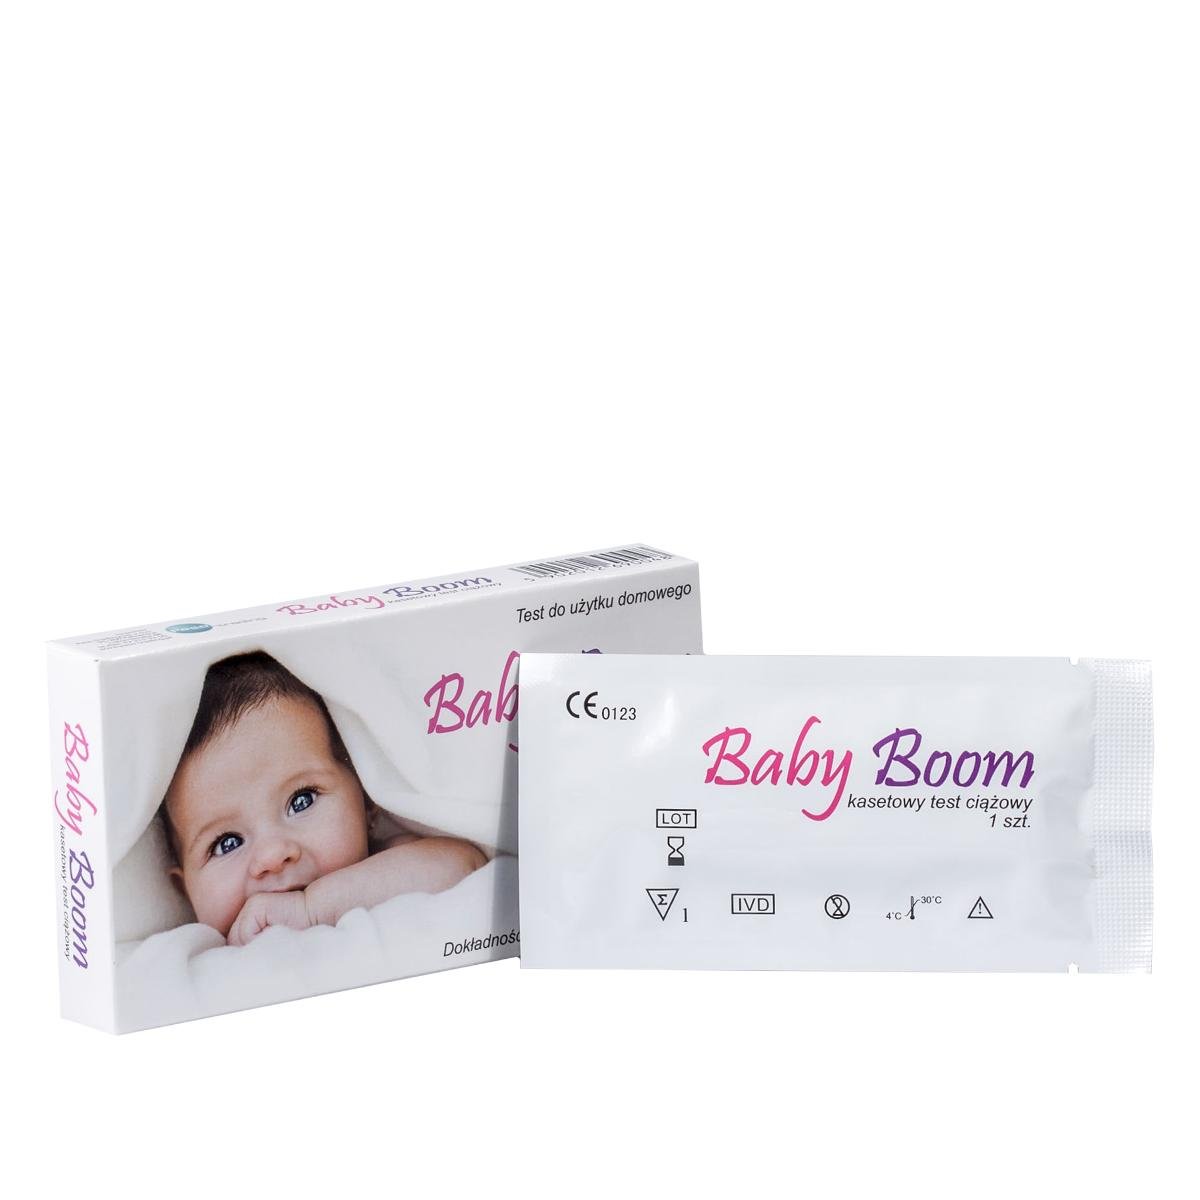 PASO Test ciążowy Baby Boom kasetowy x 1 szt